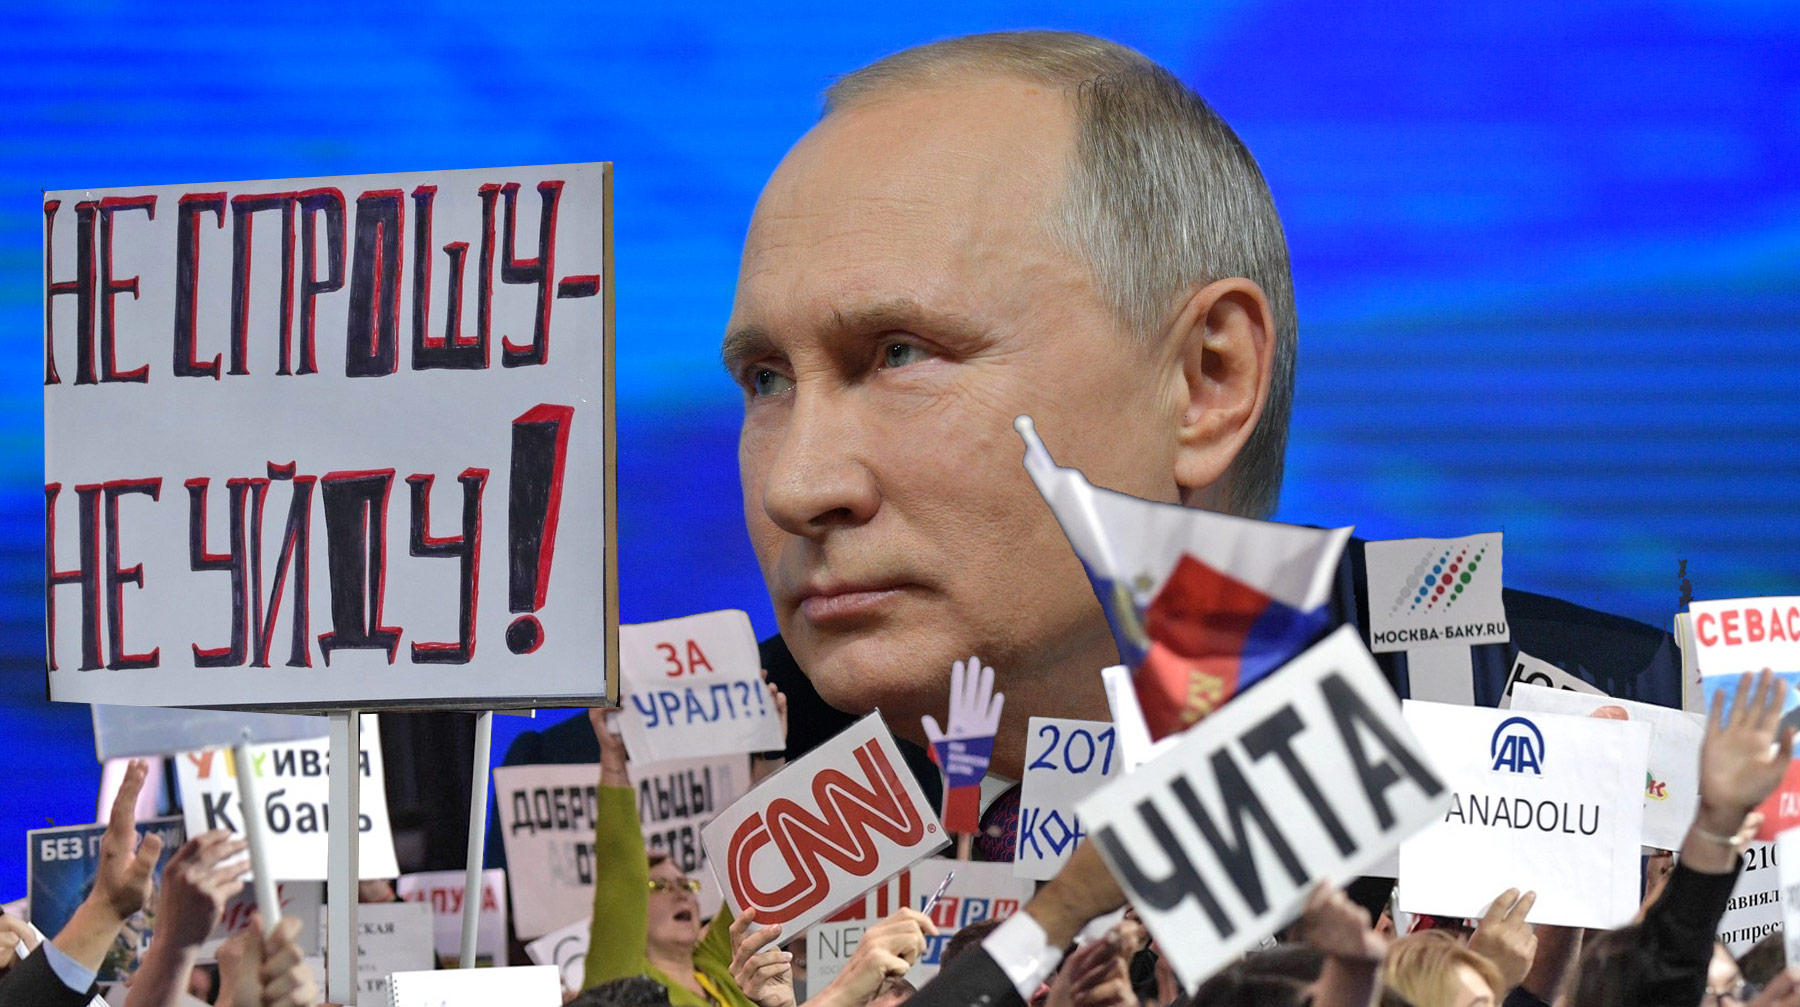 Спецкор Антон Старков — о том, как пресс-конференцию Путина превратили в цирк без сенсаций Коллаж: © Daily Storm